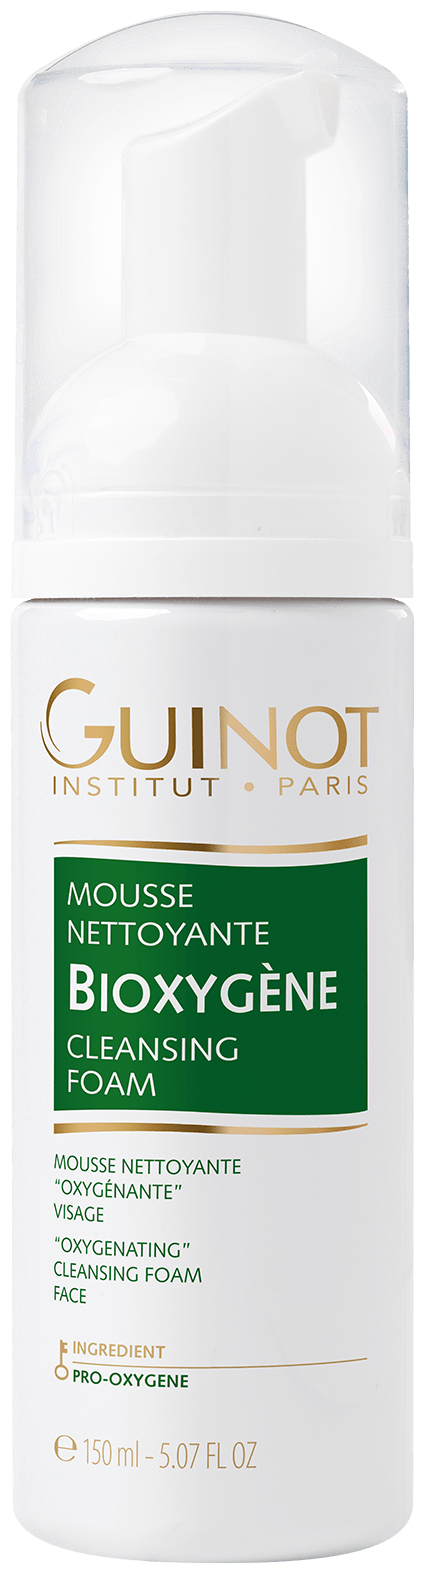 Guinot Mousse Bioxygene